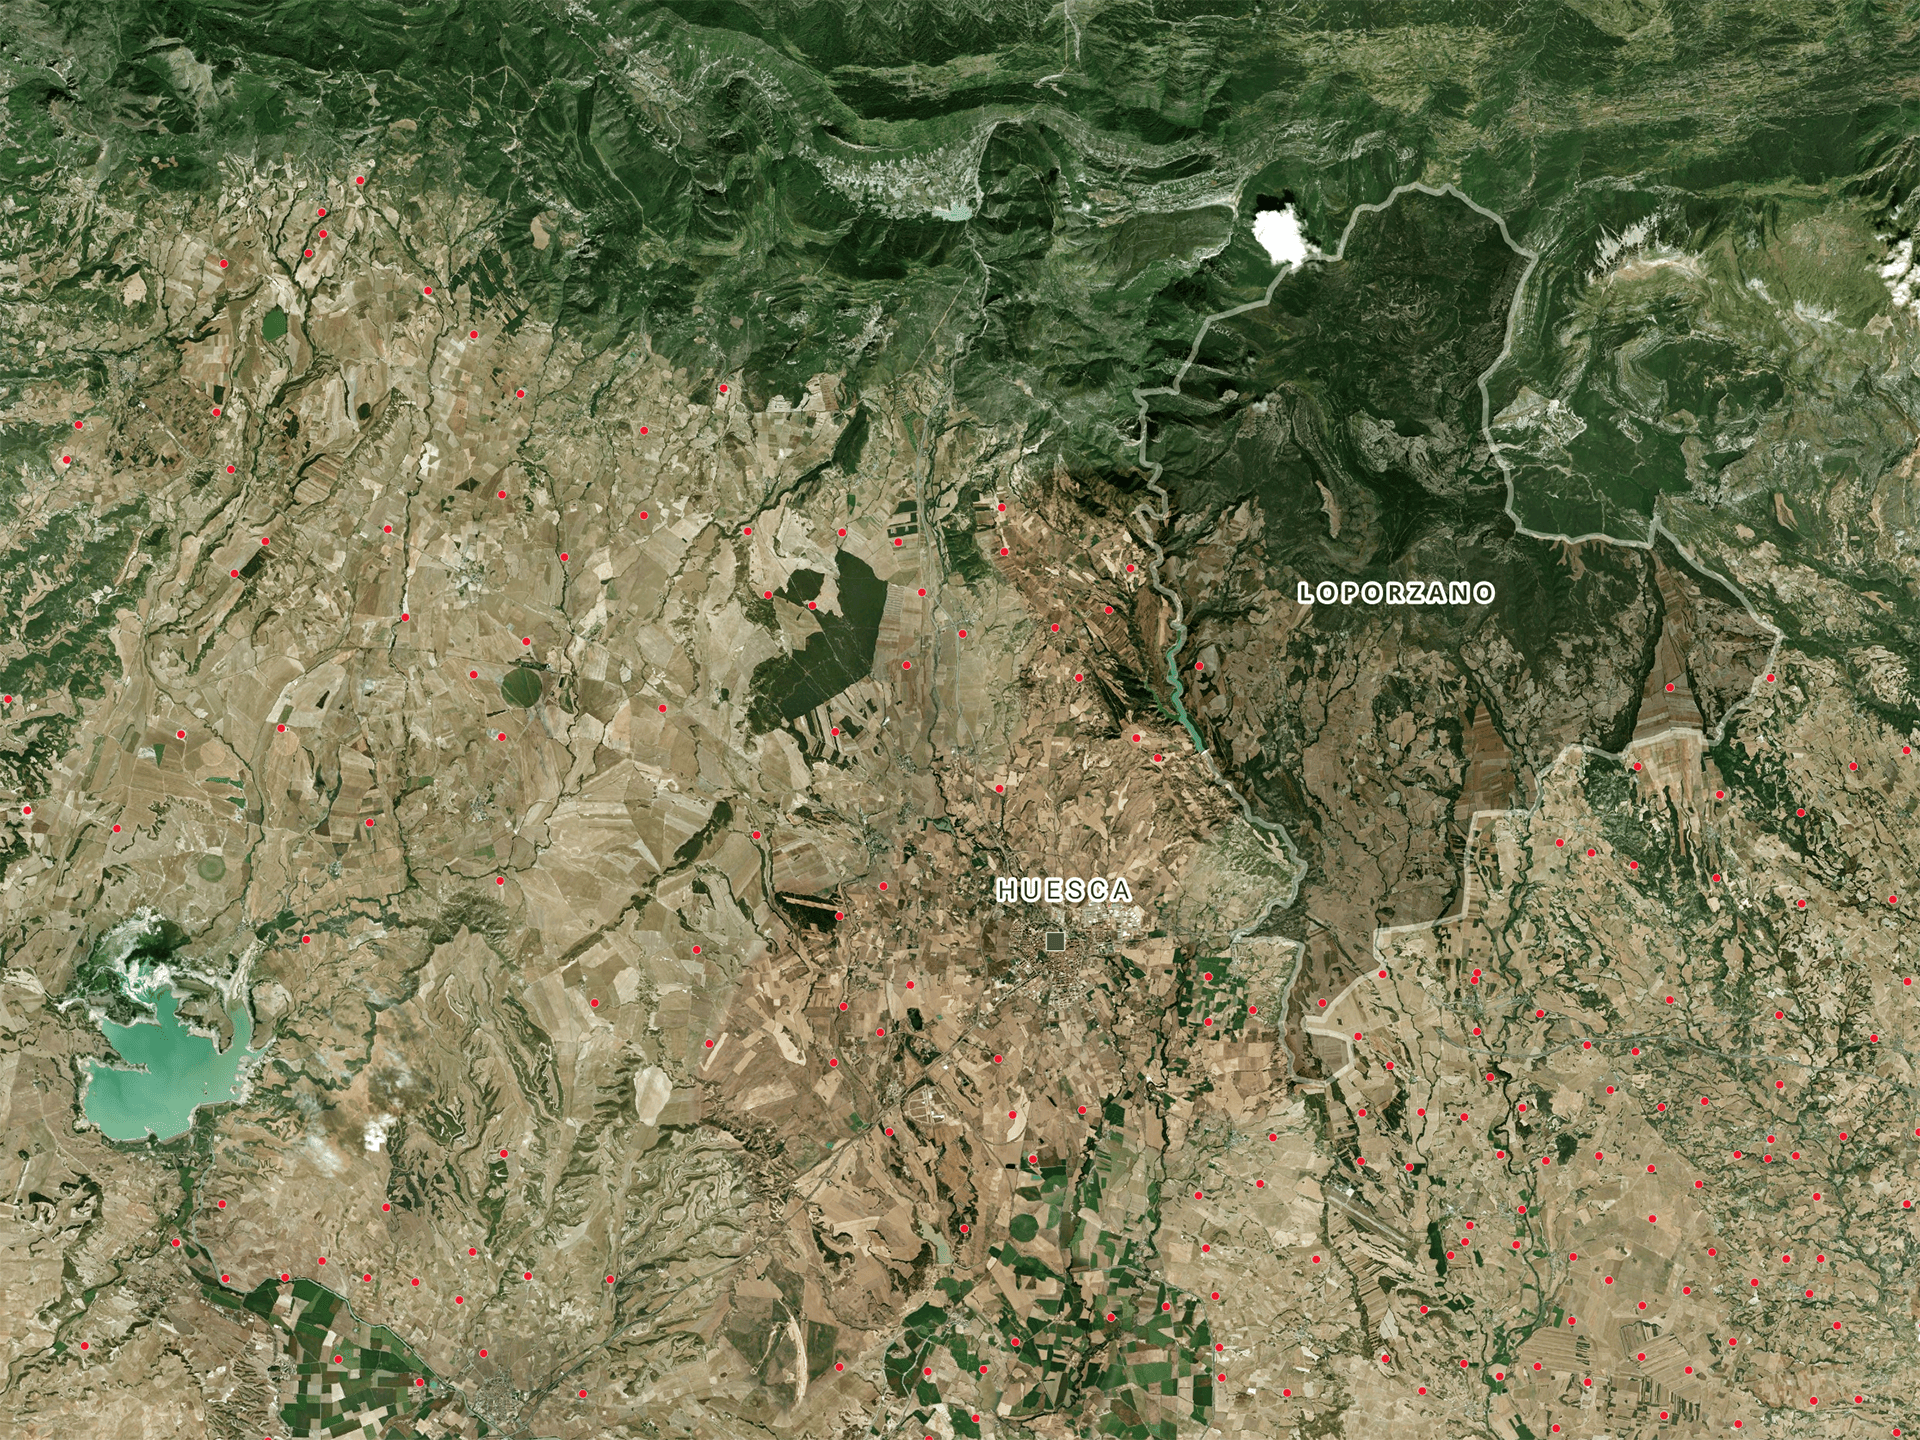 Situación del término municipal de Loporzano y las explotaciones de ganadería industrial porcina a su alrededor